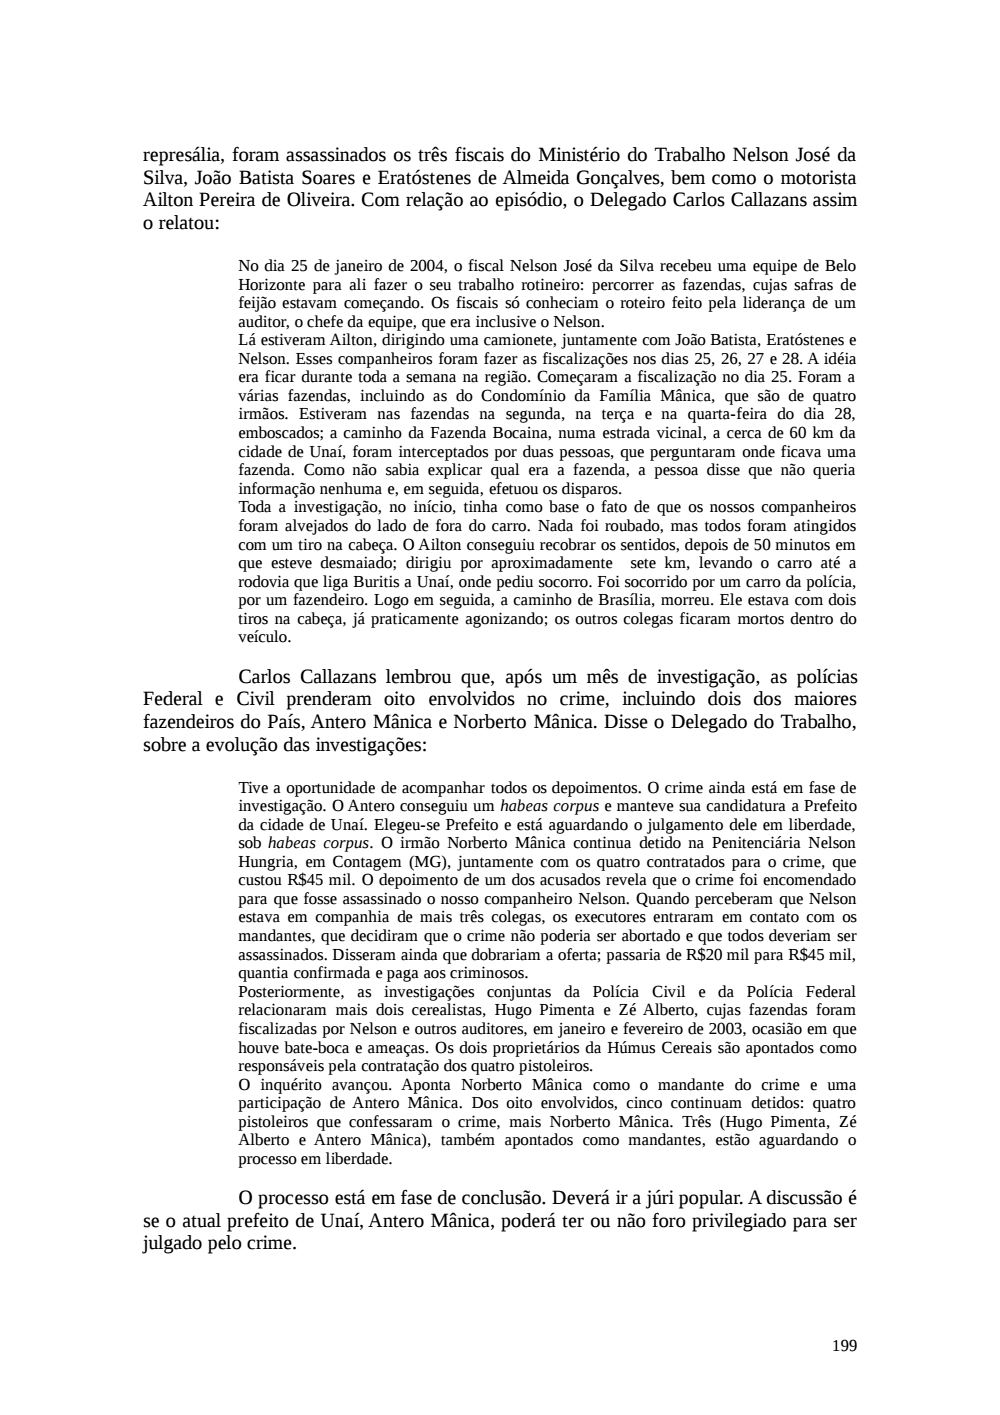 Page 199 from Relatório final da comissão